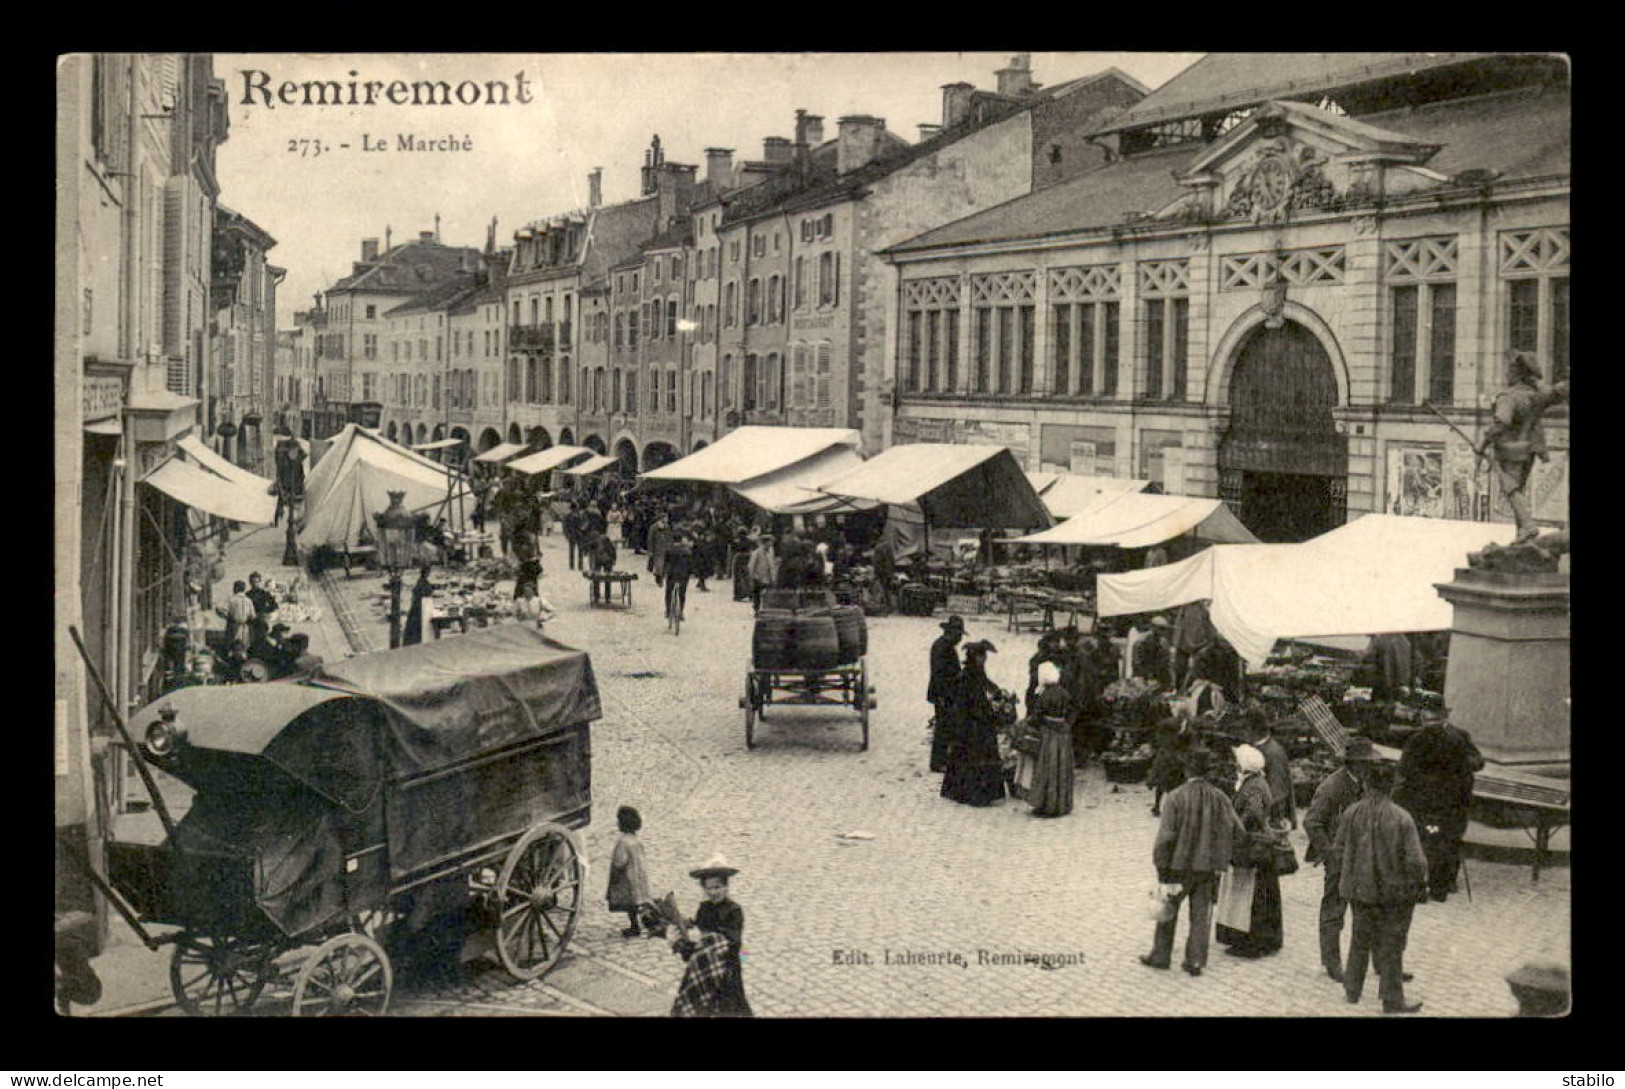 88 - REMIREMONT - LE MARCHE - ATTELAGE TRANSPORTANT DES TONNEAUX DE VIN - Remiremont